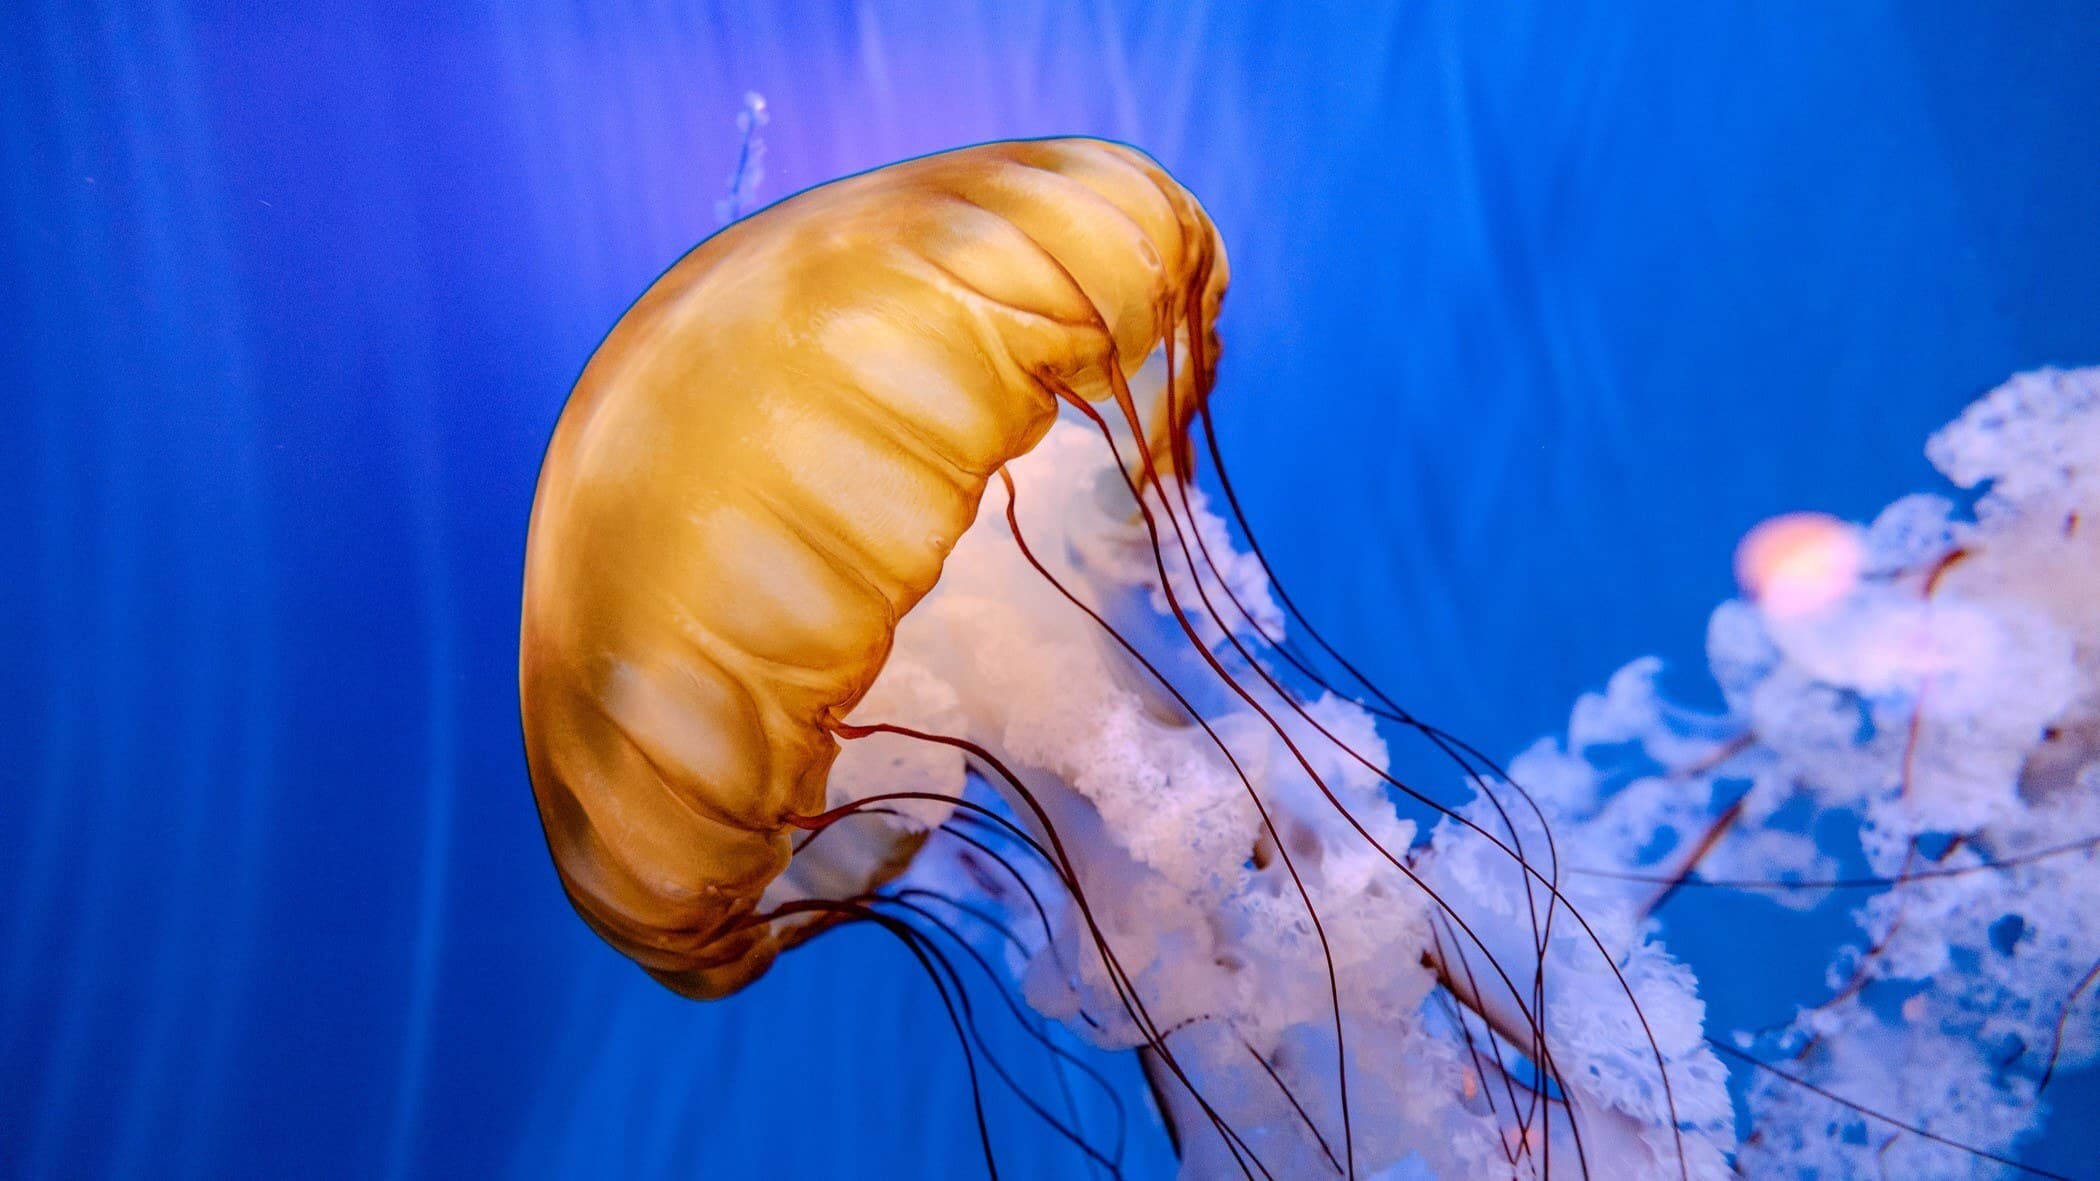 Sea nettle jelly